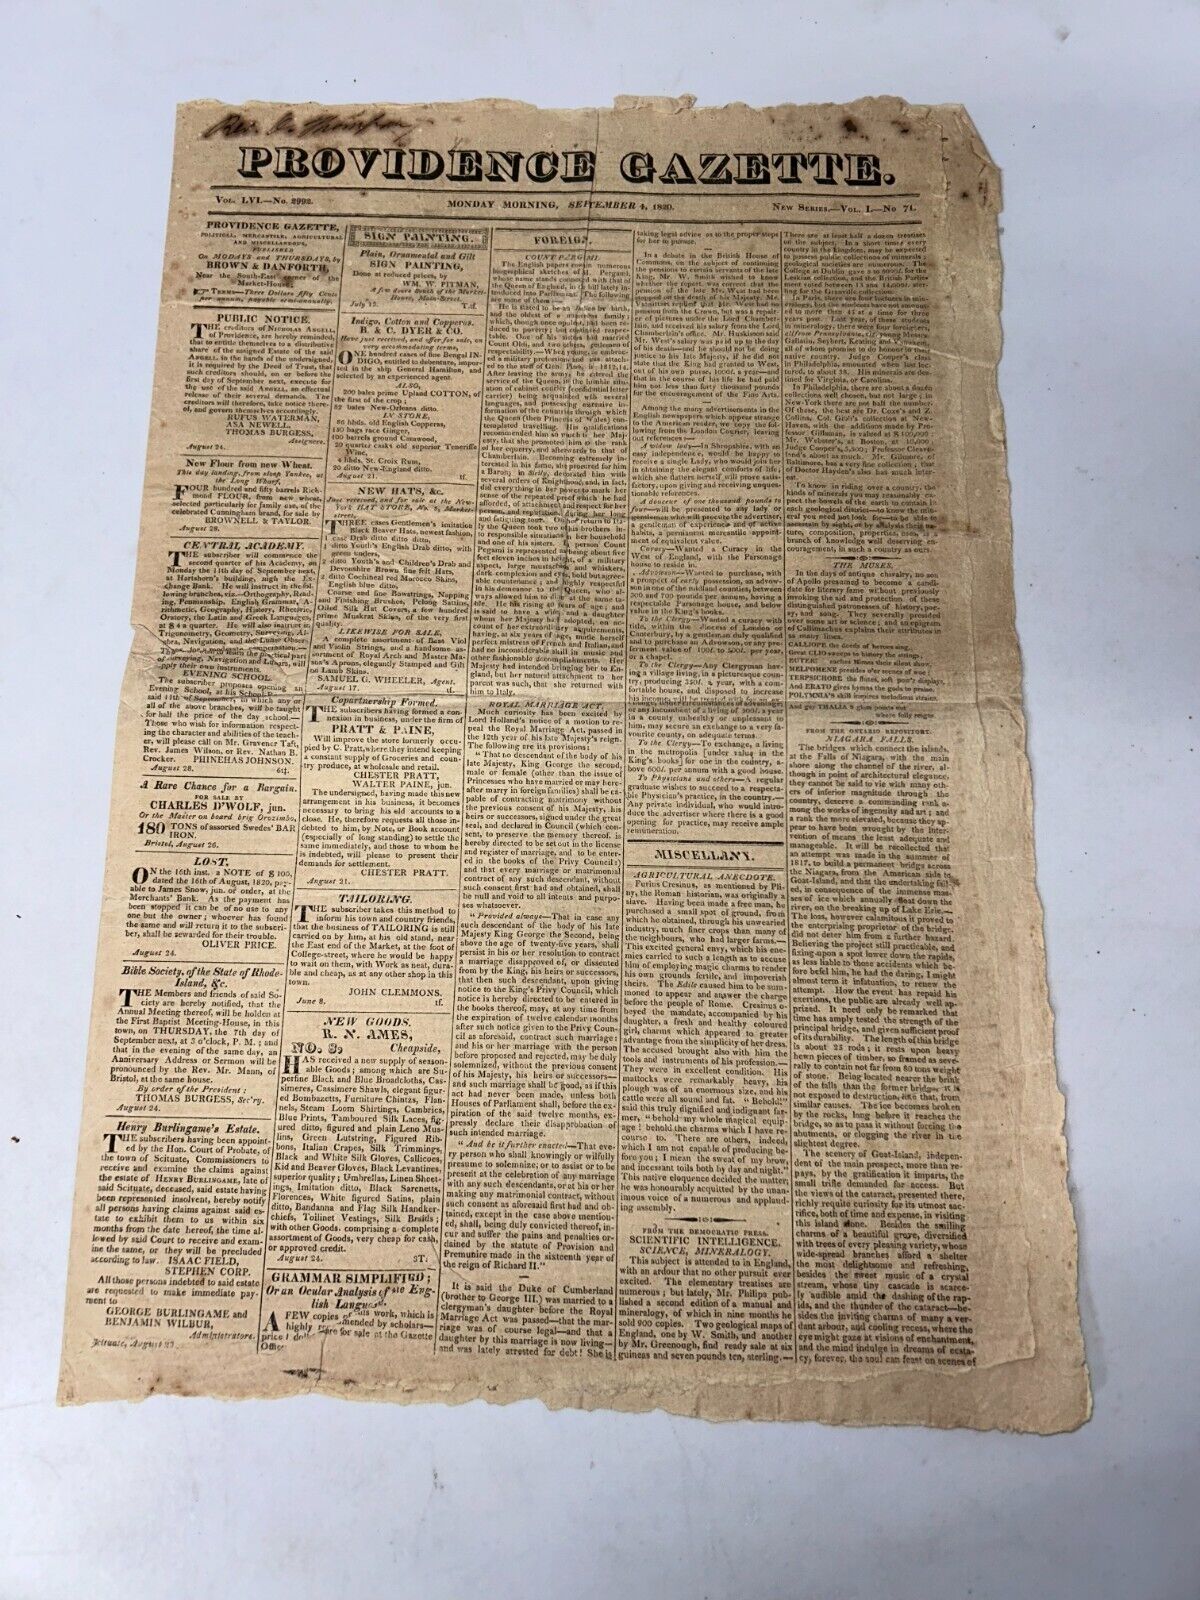 Providence Gazette September 4, 1820 Vol LVI No. 2992 ( Vol 1 No. 71 ) Newspaper